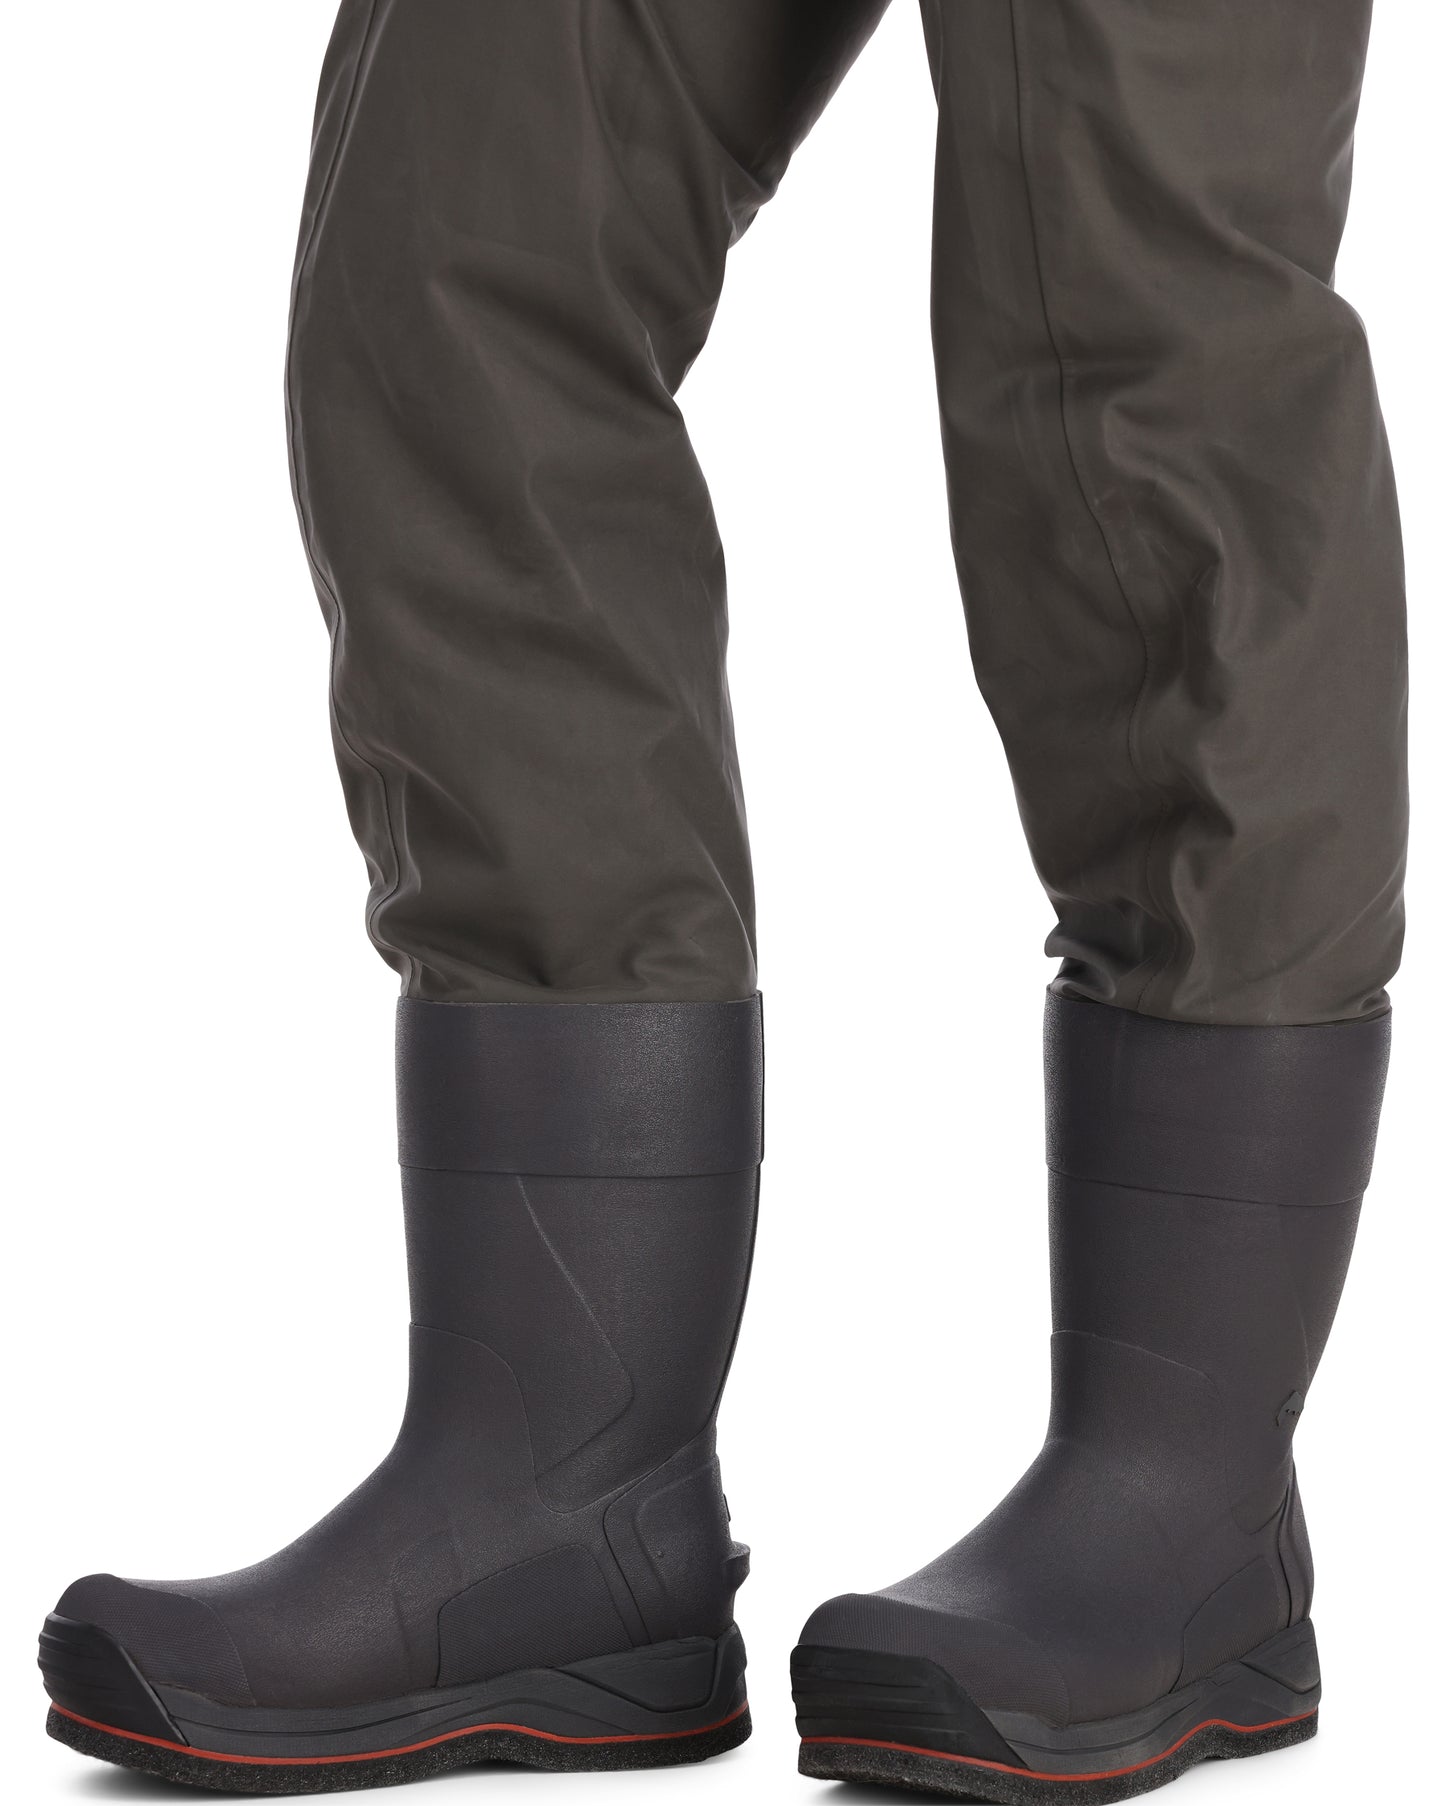 13596-042-g3-guide-bootfoot-felt-model-boots